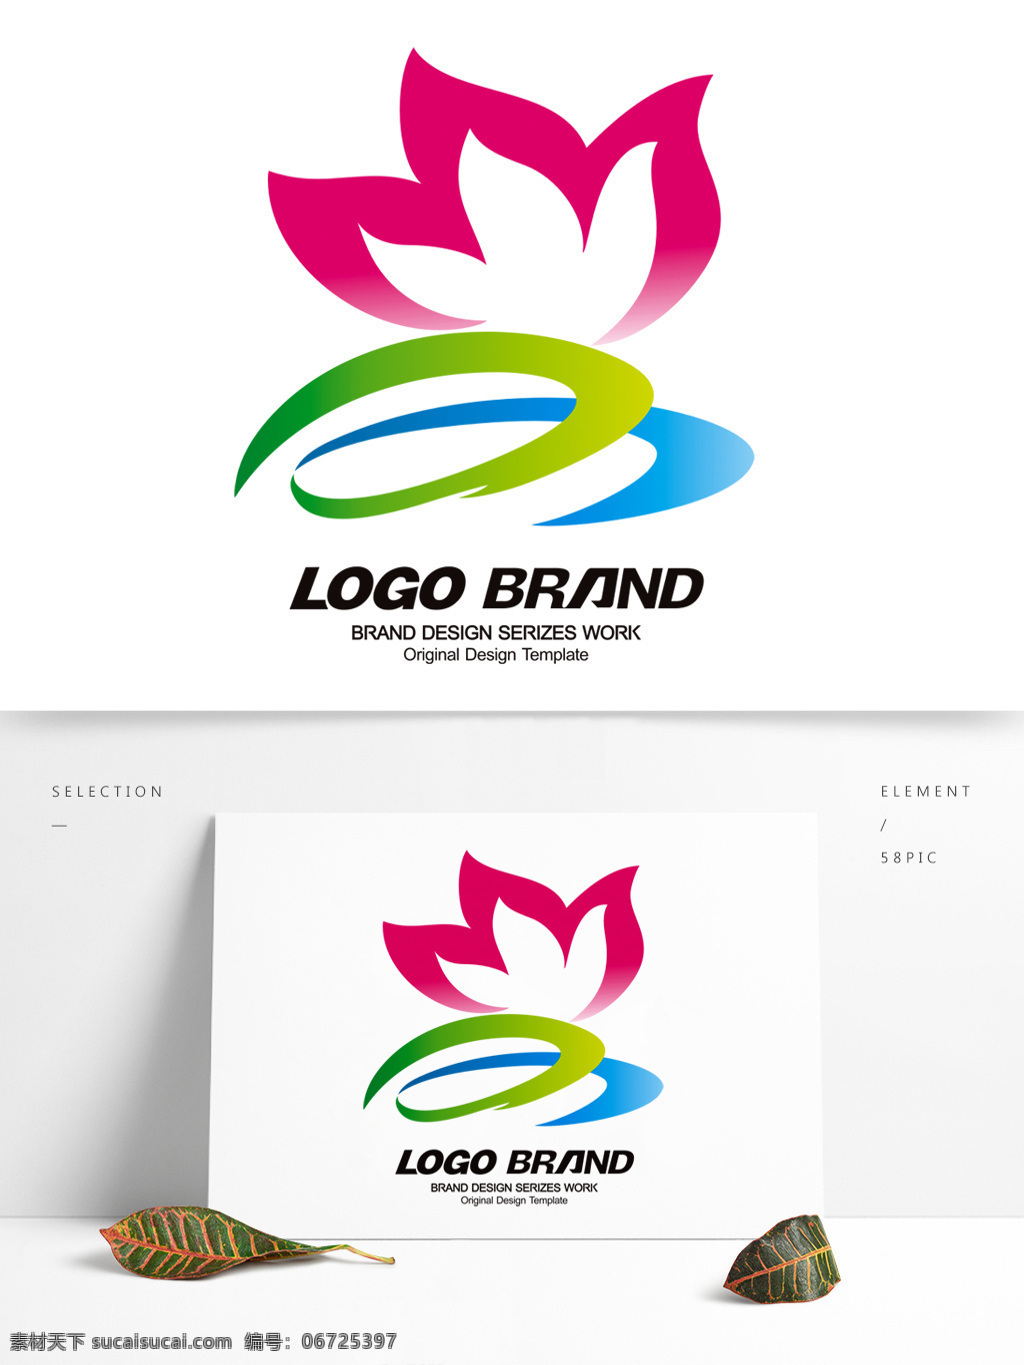 矢量 中国 风 荷花 logo 设计公司 标志 d 字母 标志设计 荷花标志 公司 公司标志设计 企业 会徽标志设计 企业标志设计